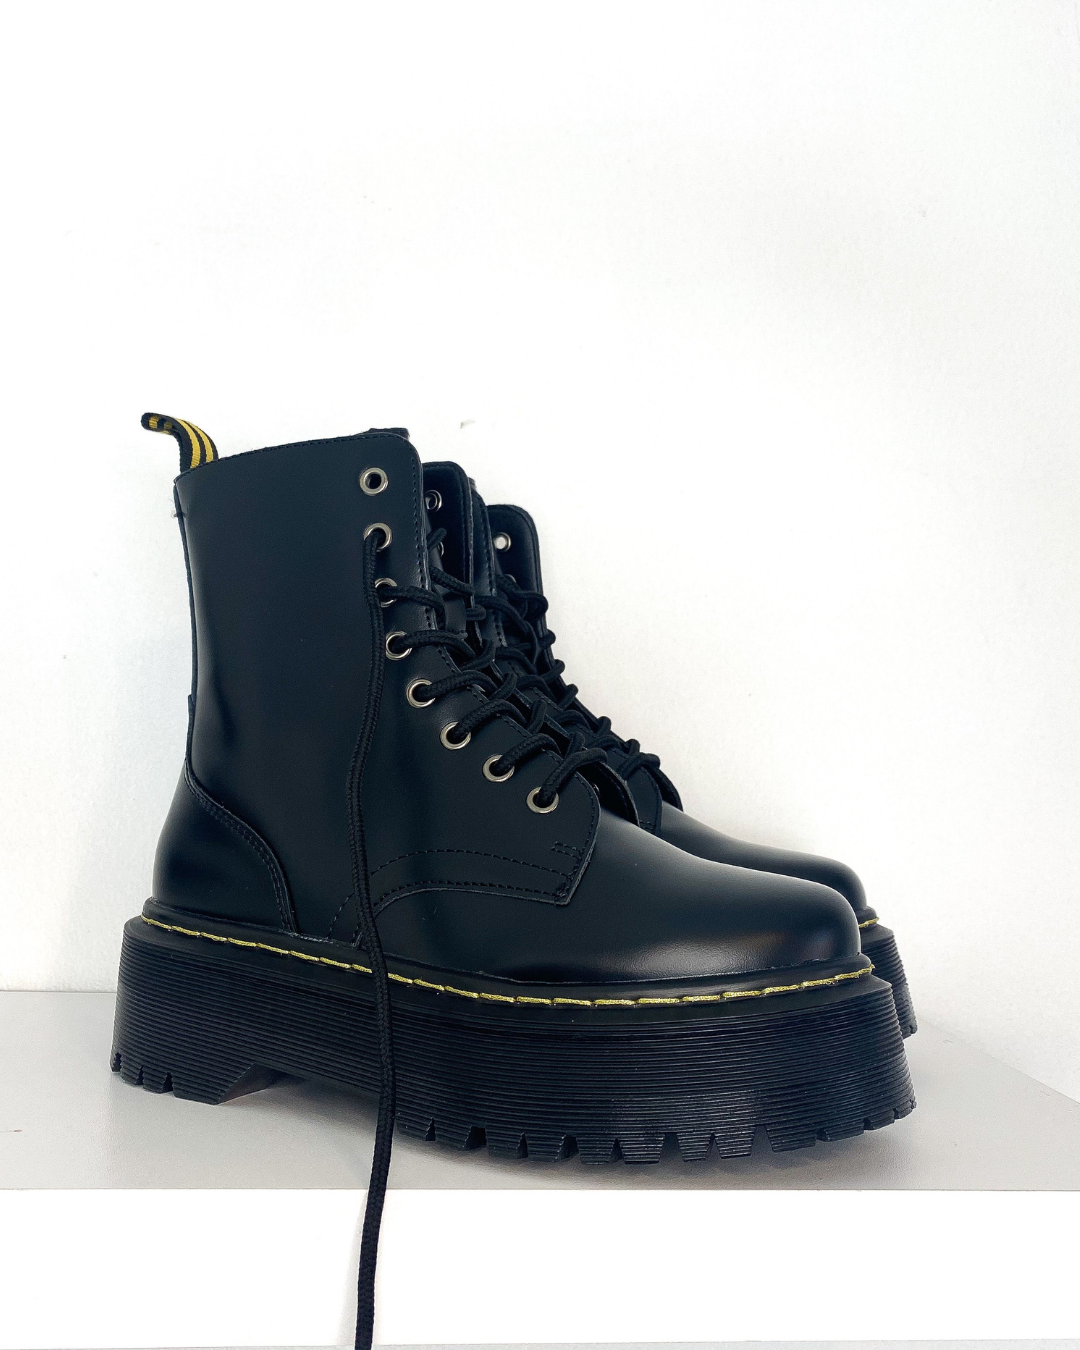 Boots black matte